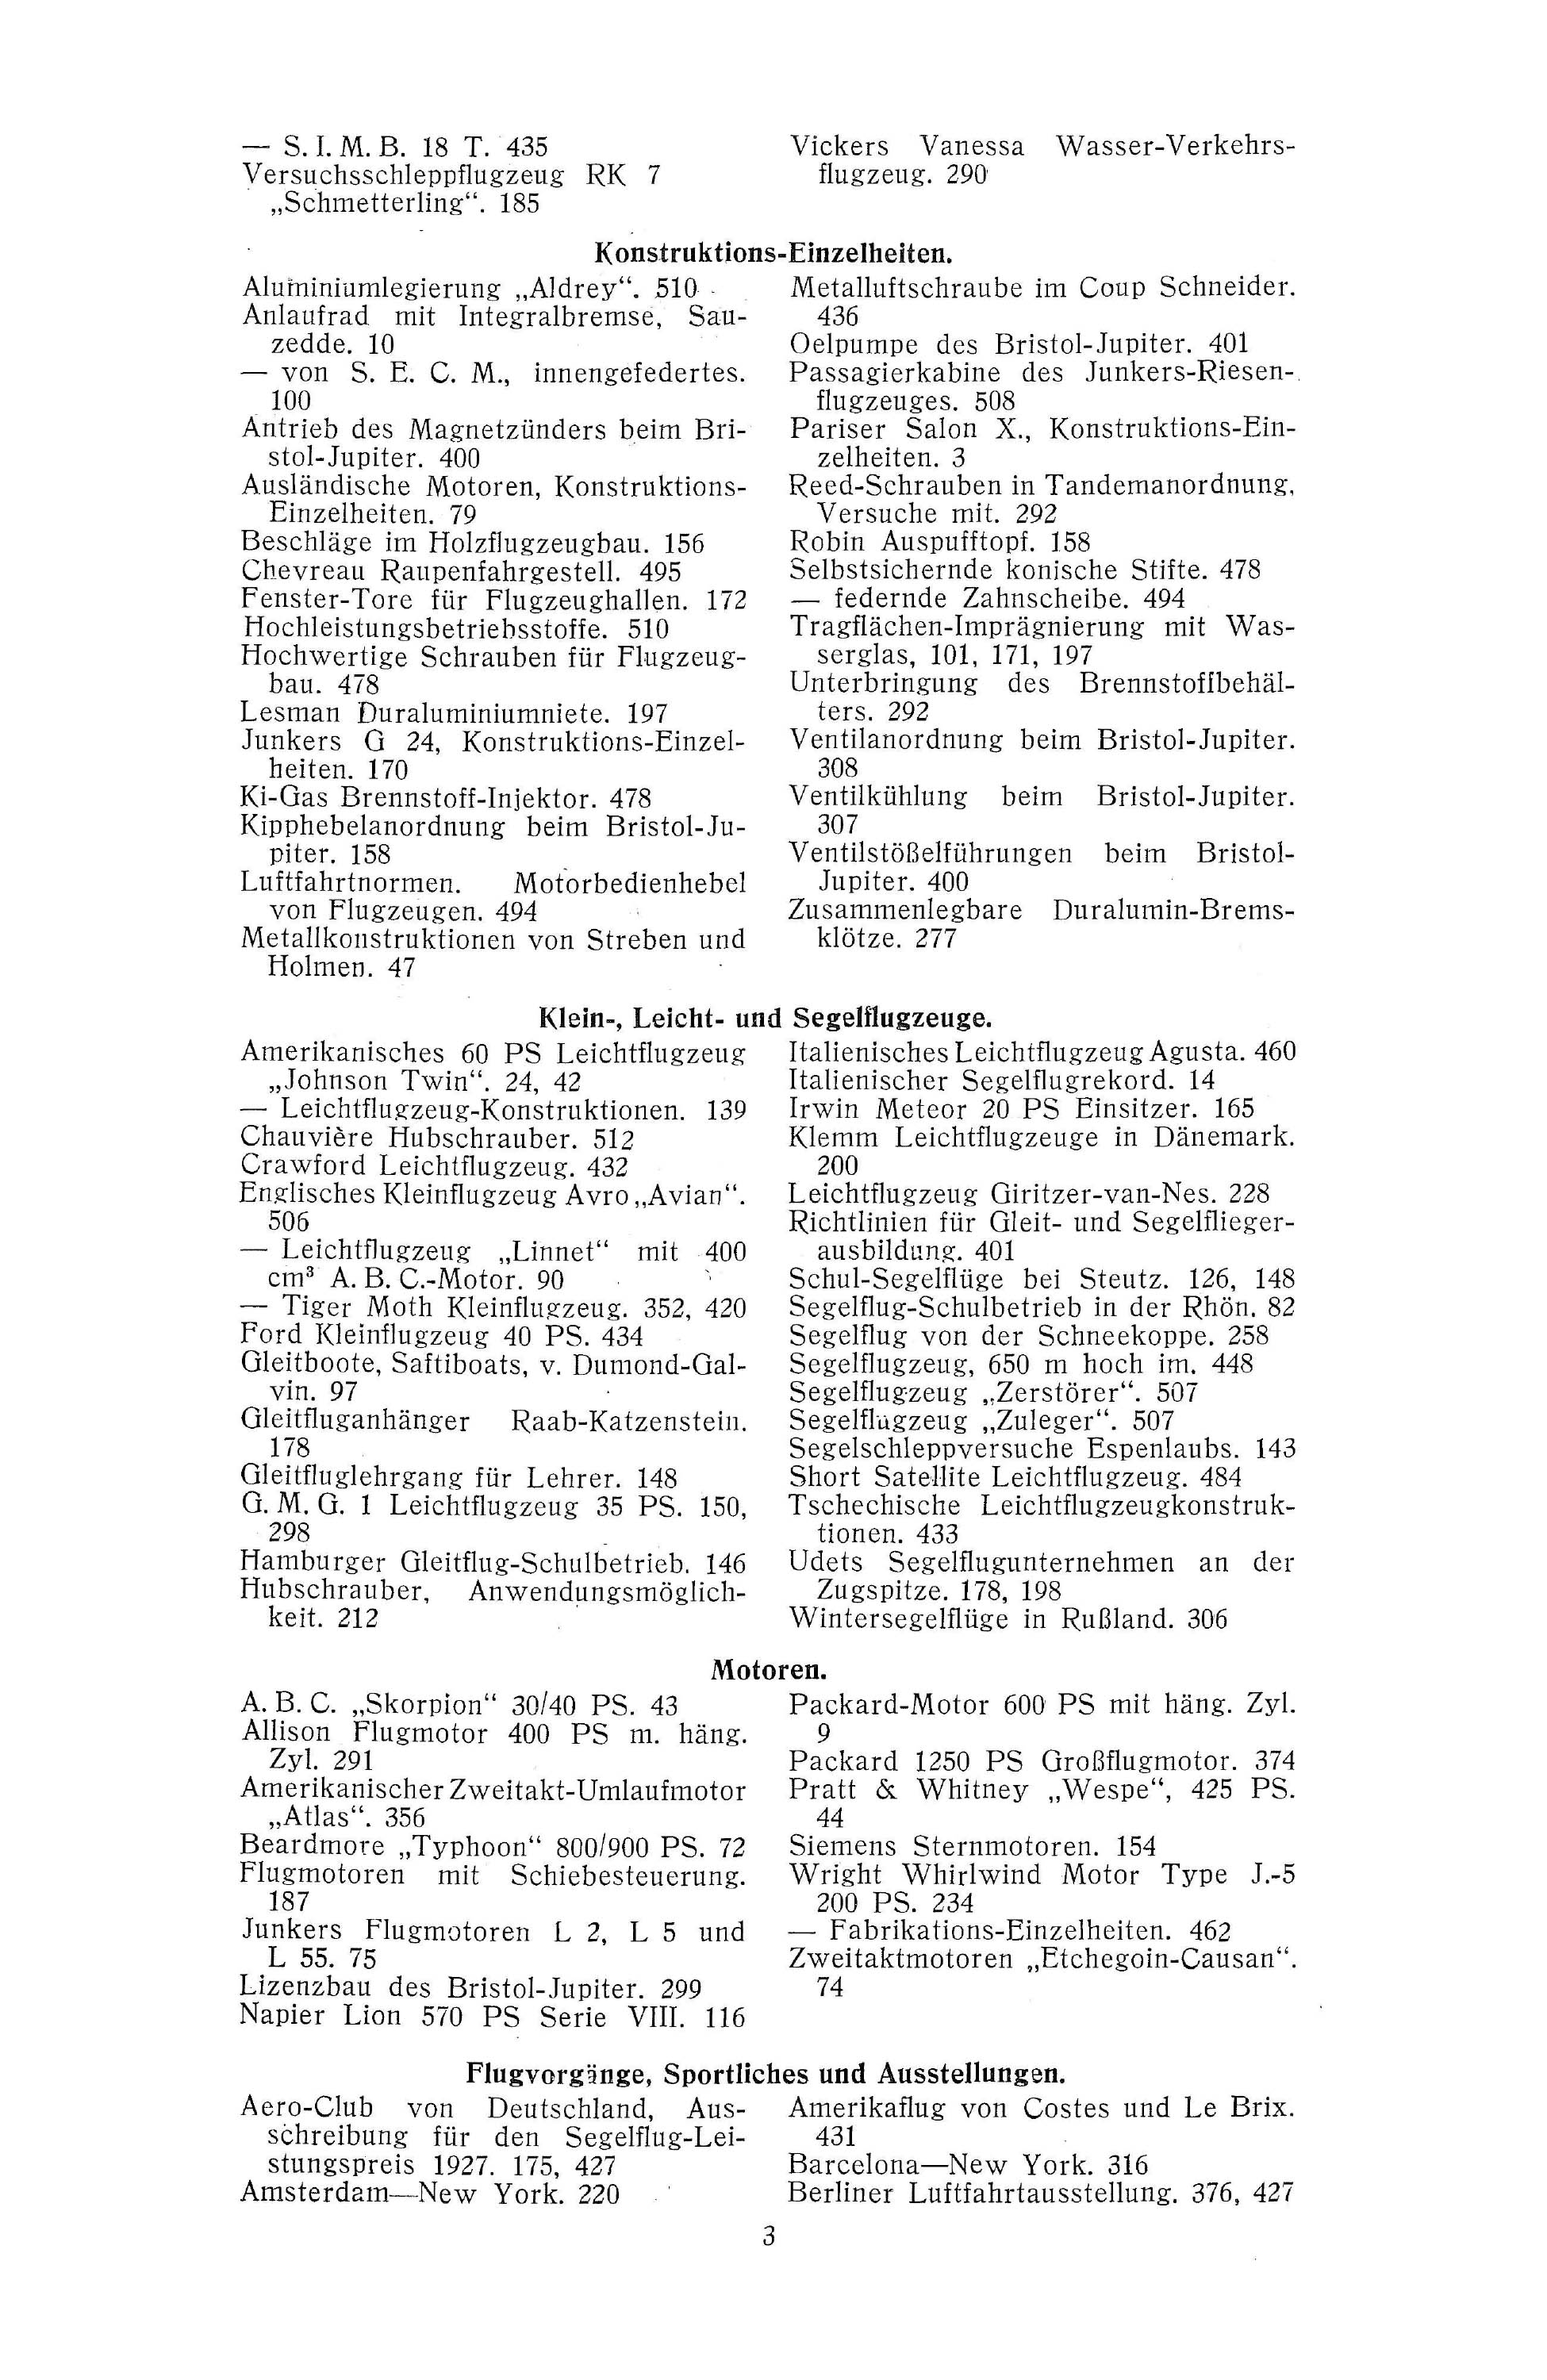 Sachregister und Inhaltsverzeichnis der Zeitschrift Flugsport 1927